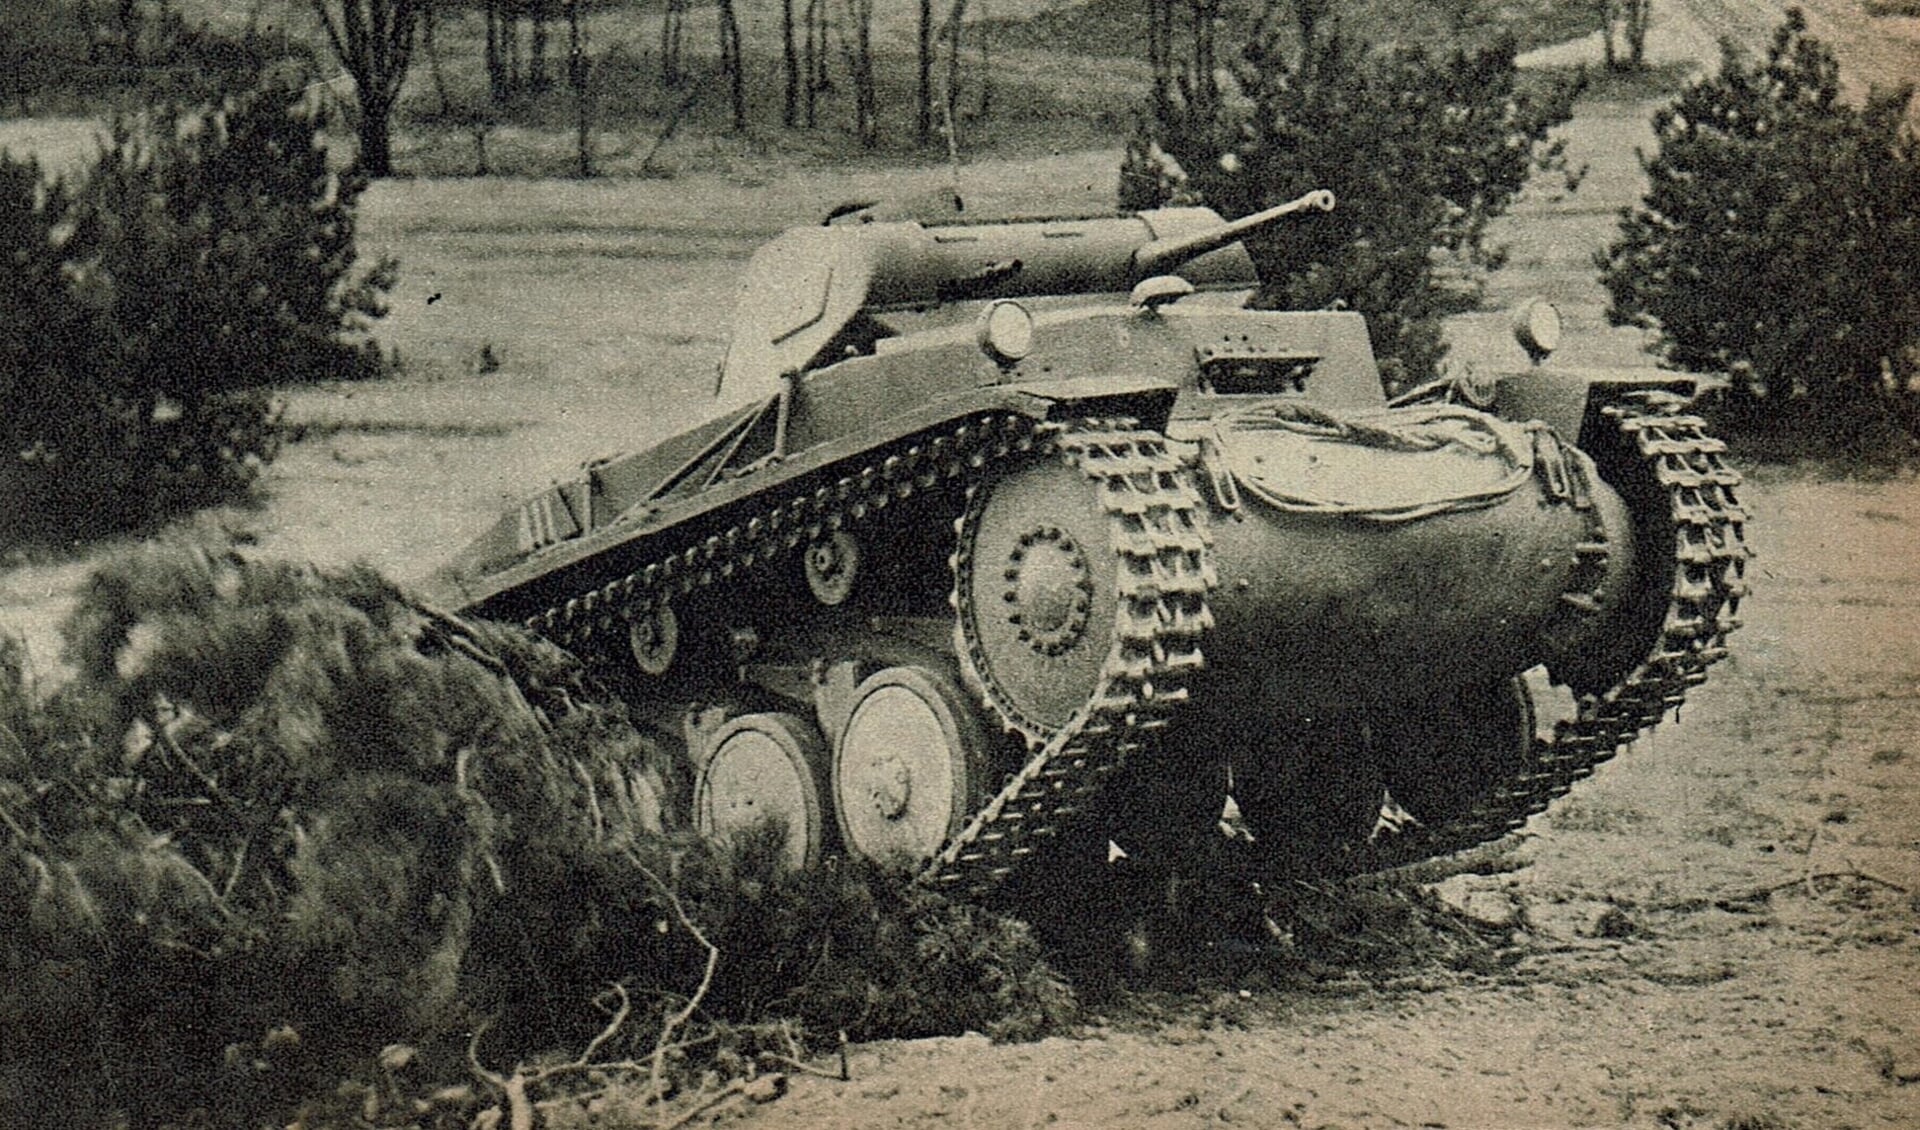 Deze tank was al in gebruik voordat de Koude oorlog uitbrak.